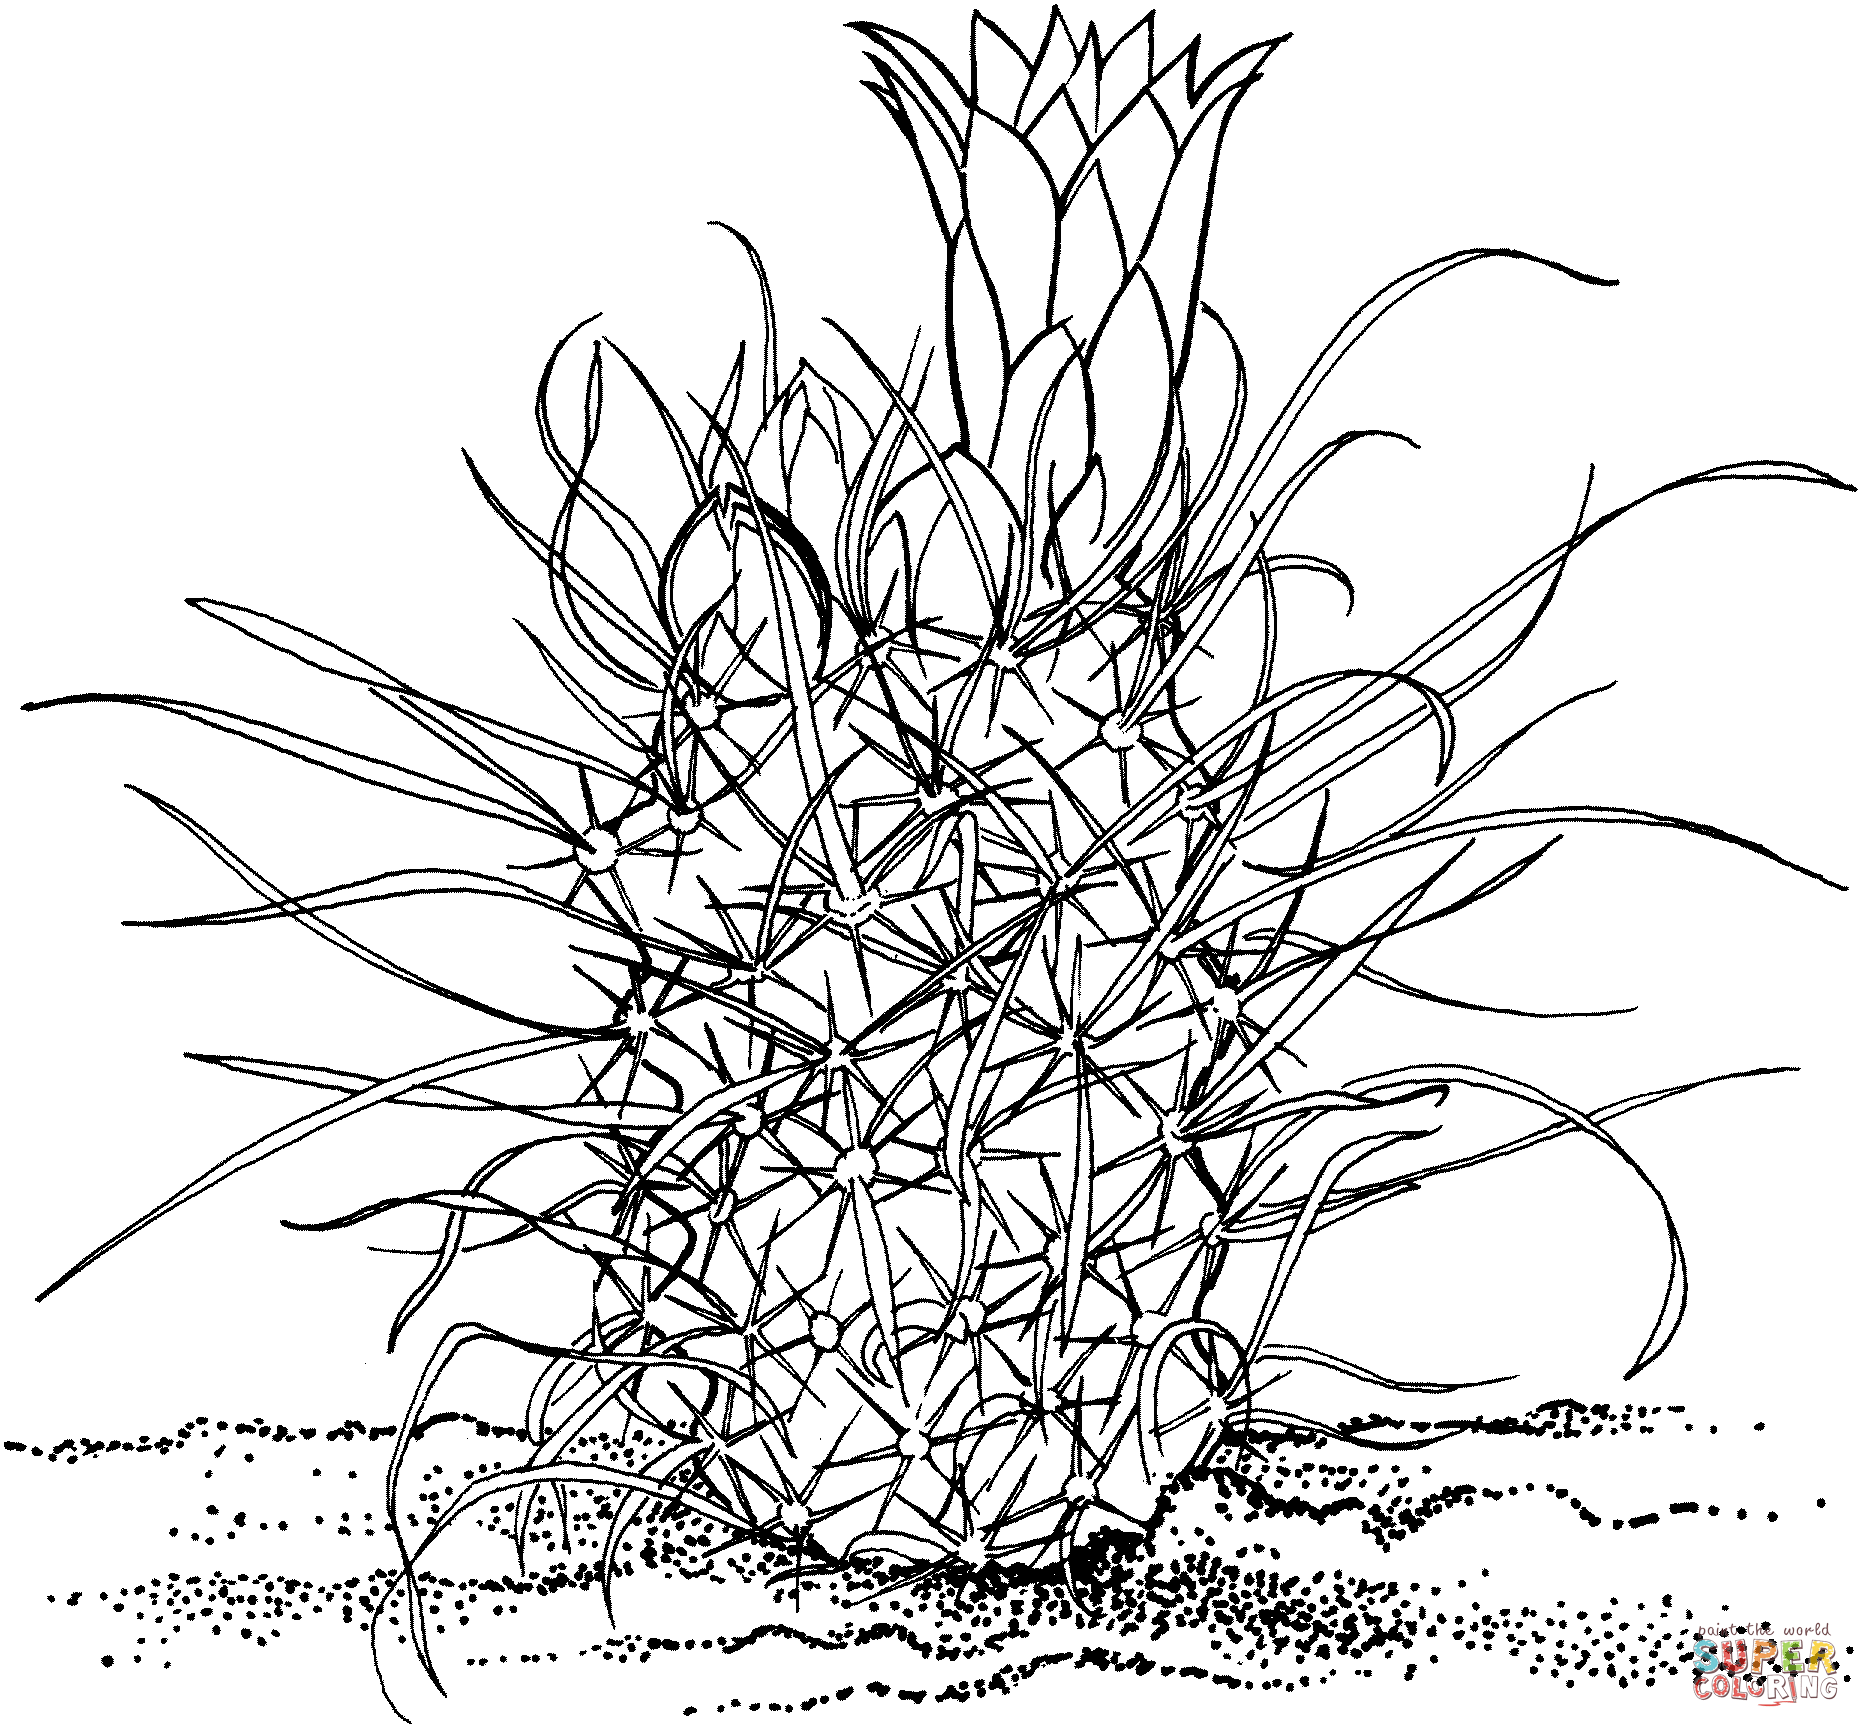 Toumeya Papyracantha oder Gramma Grass Cactus von Cactus